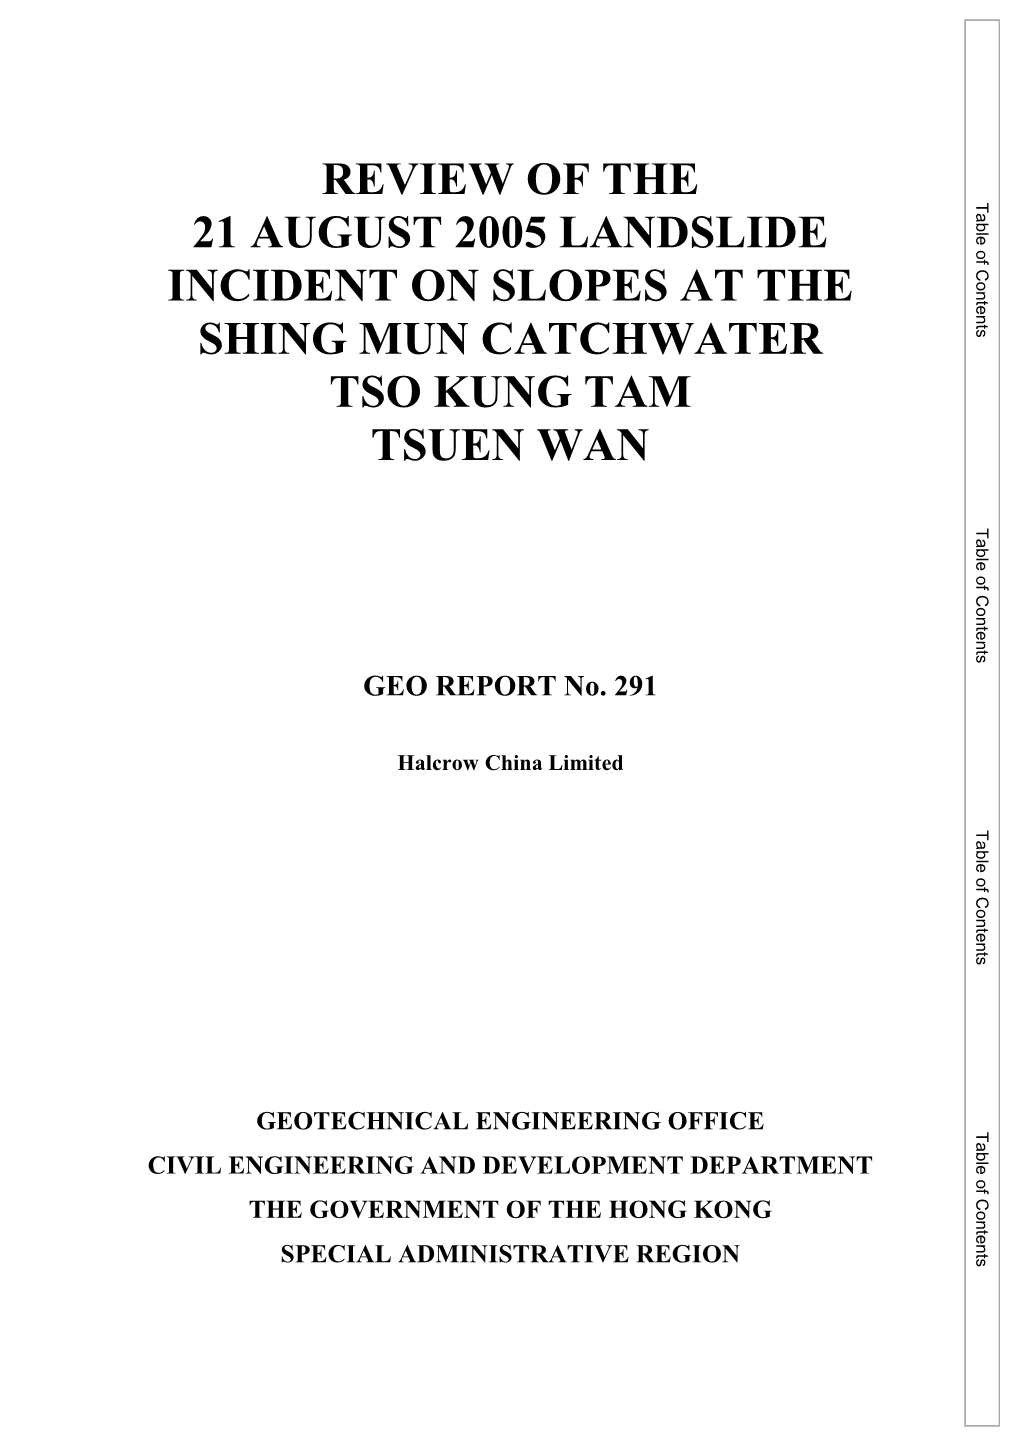 GEO REPORT No. 291